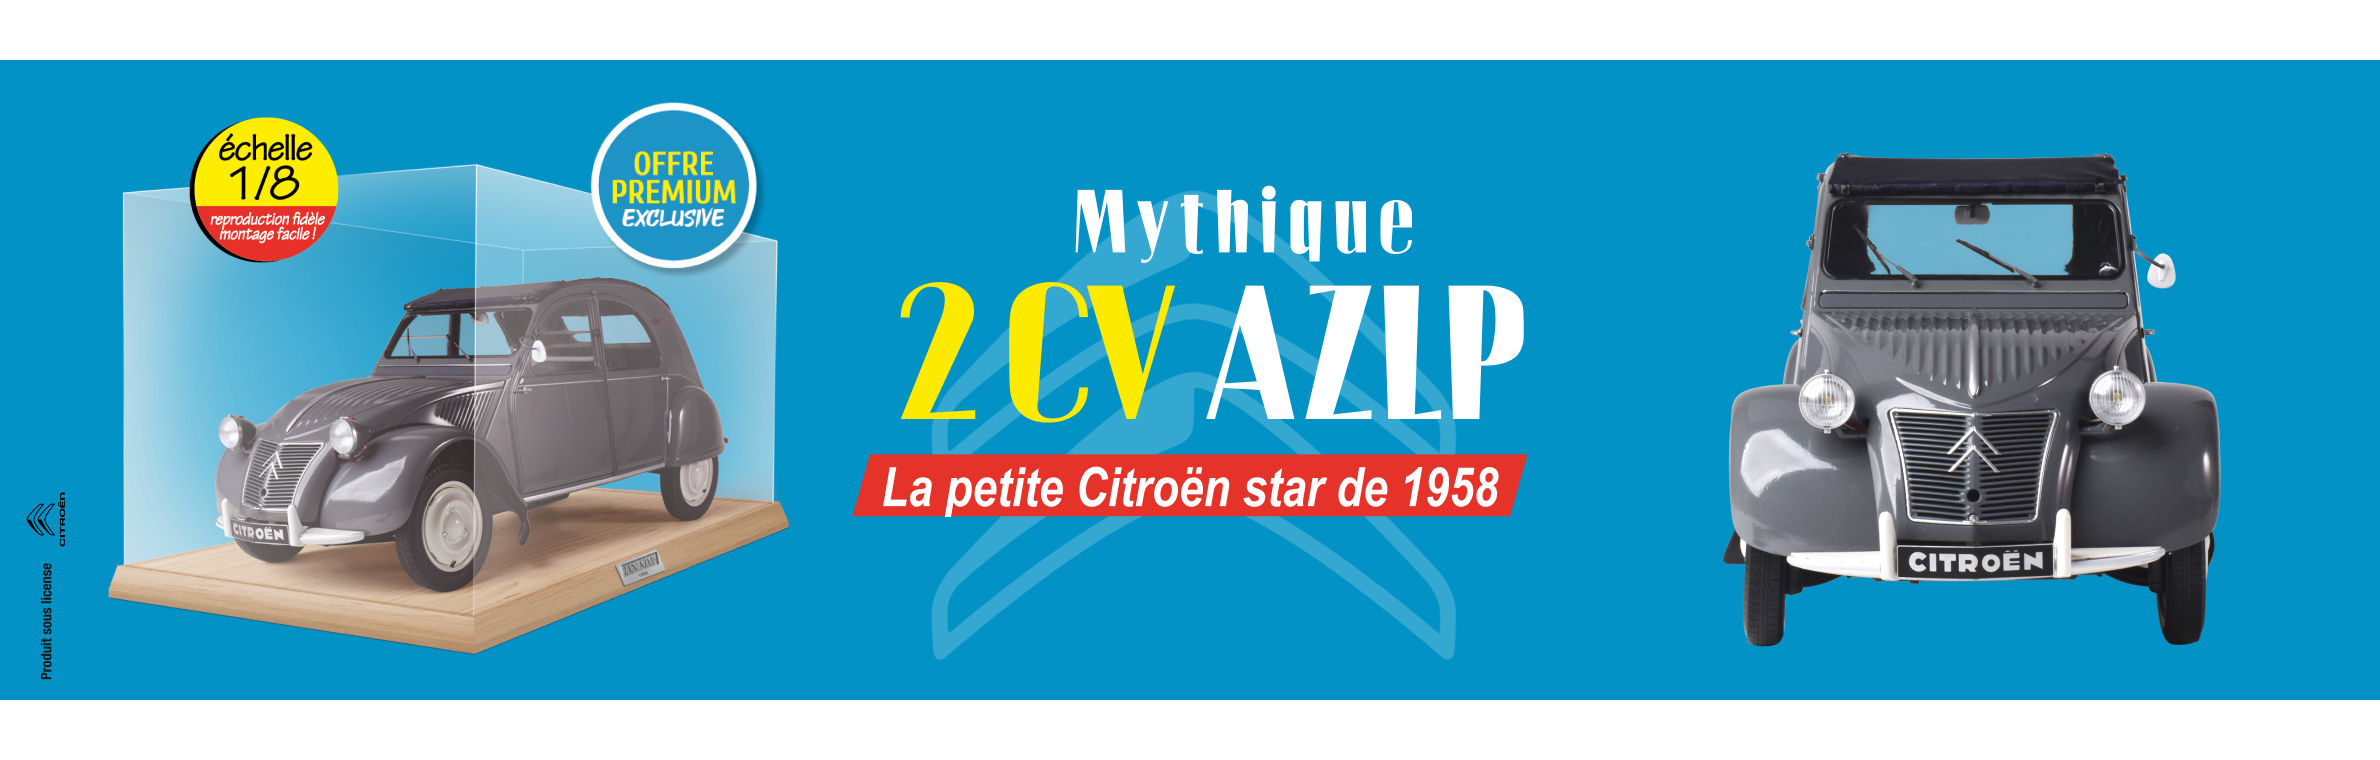 Construire la 2CV AZLP